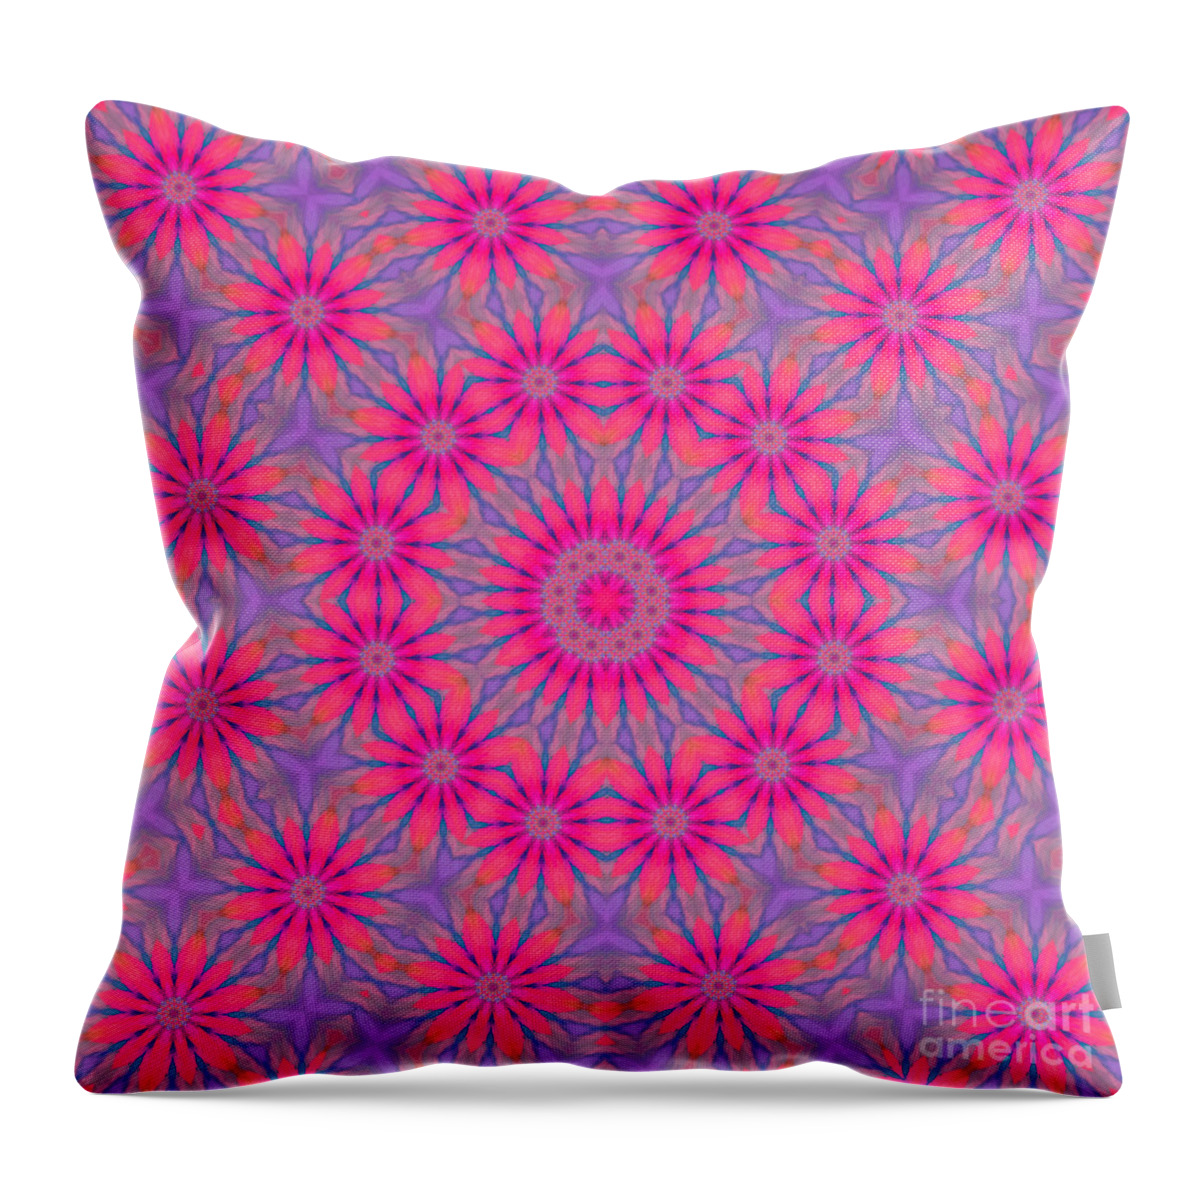 Pink Throw Pillow featuring the digital art Jubilation by Rachel Hannah